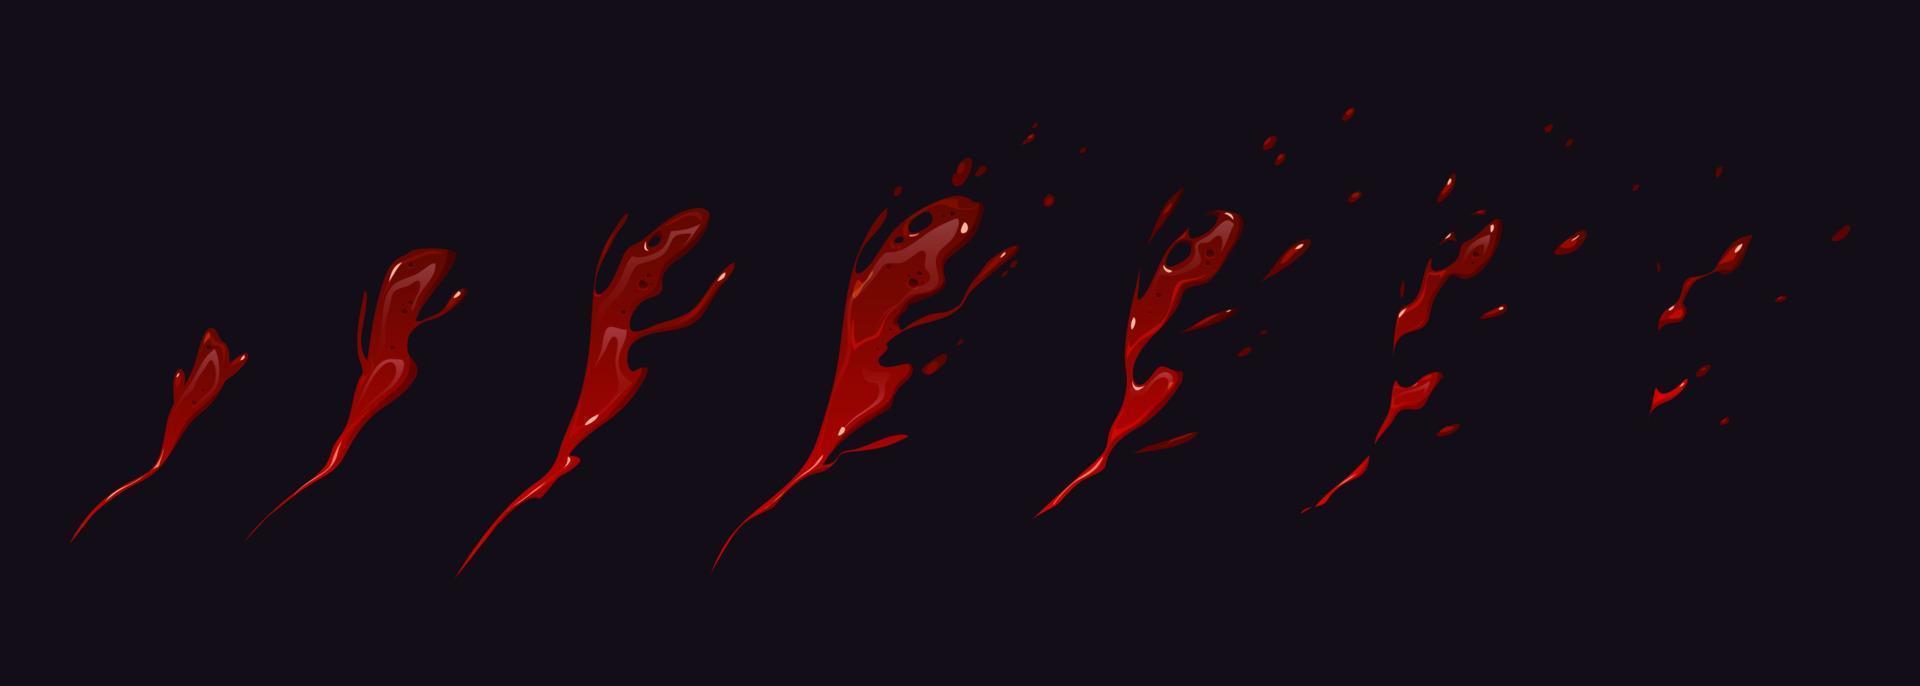 Blutspritzer-Animation Sprite-Blatt dynamische Bewegung vektor